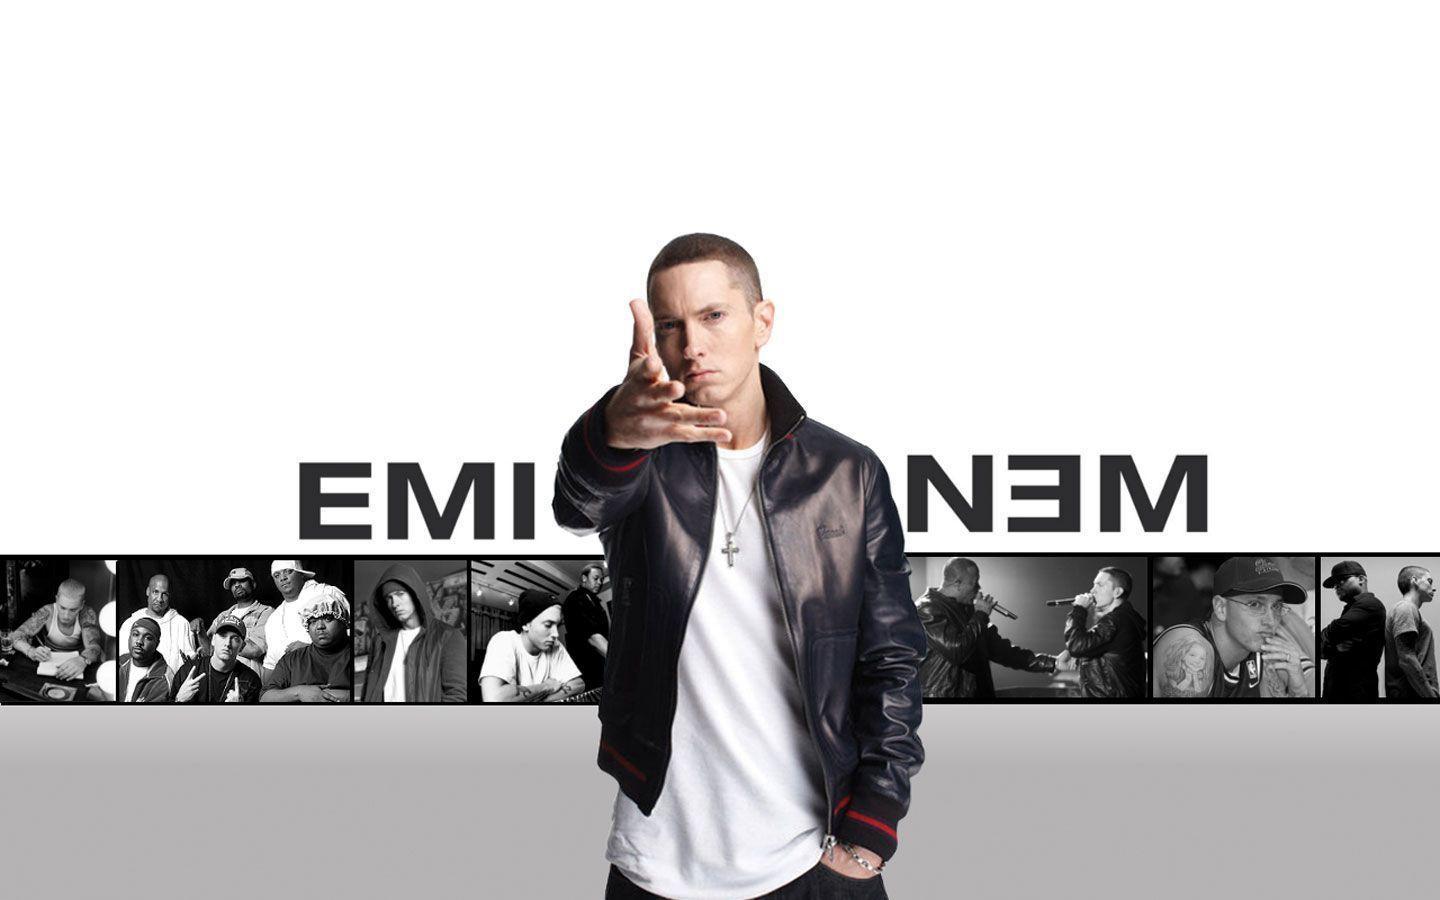 Eminem Mobile Wallpapers HD Eminem Backgrounds Free Images Download